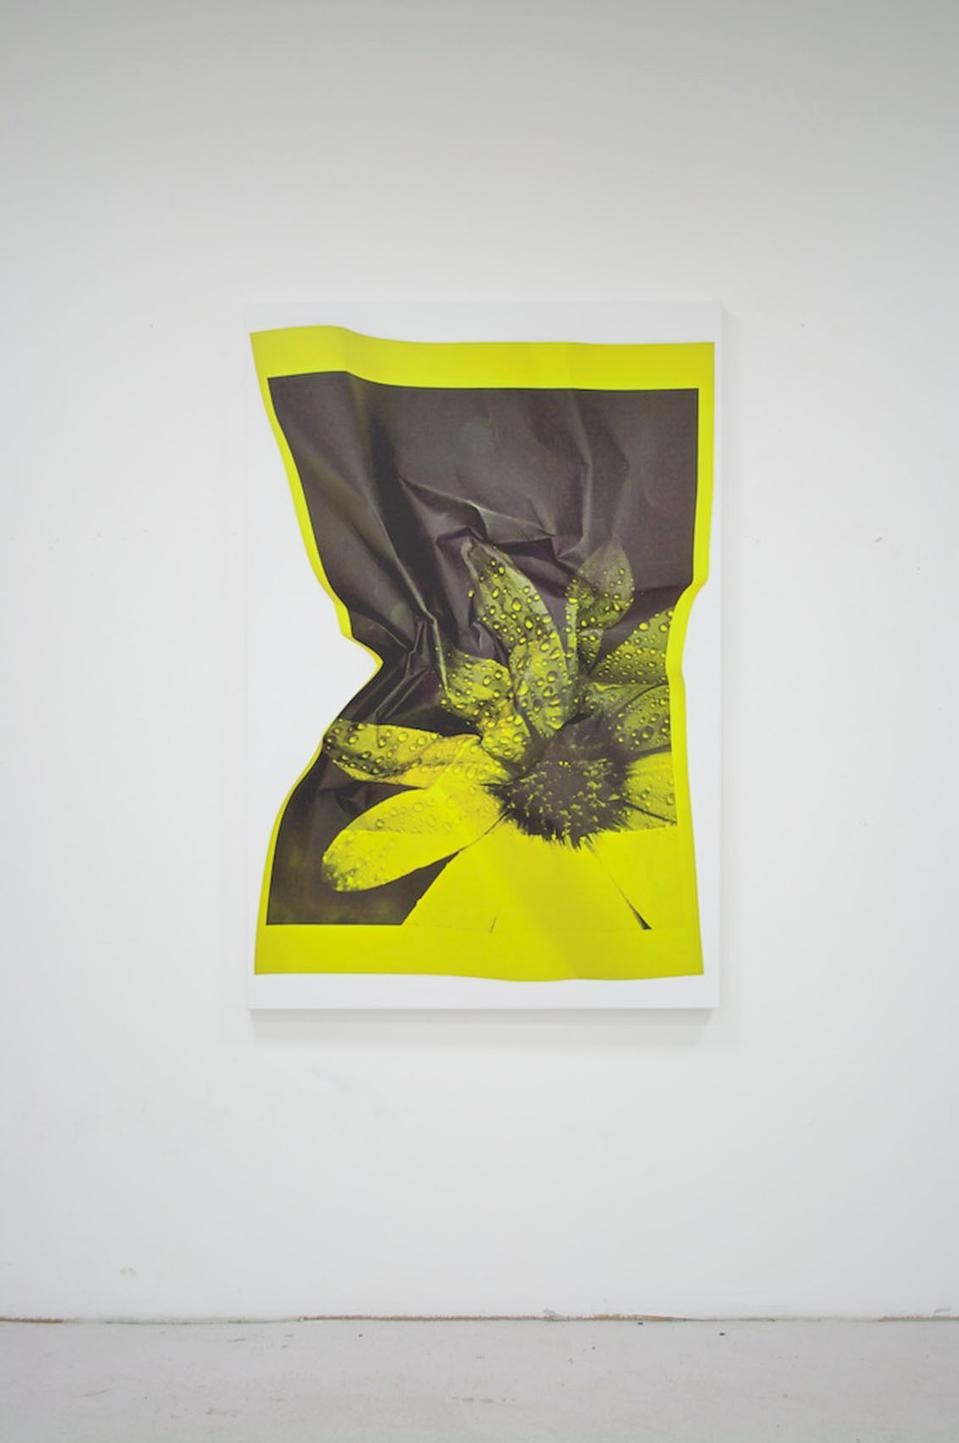 Riccardo Previdi, <i>Test (Yellow Flower)</i>, 2010. 
Stampa-UV su tela, 150 x 100 cm, pezzo unico (per gentile concessione Sommer & Kohl, Berlin e Galleria Francesca Minini, Milano).
